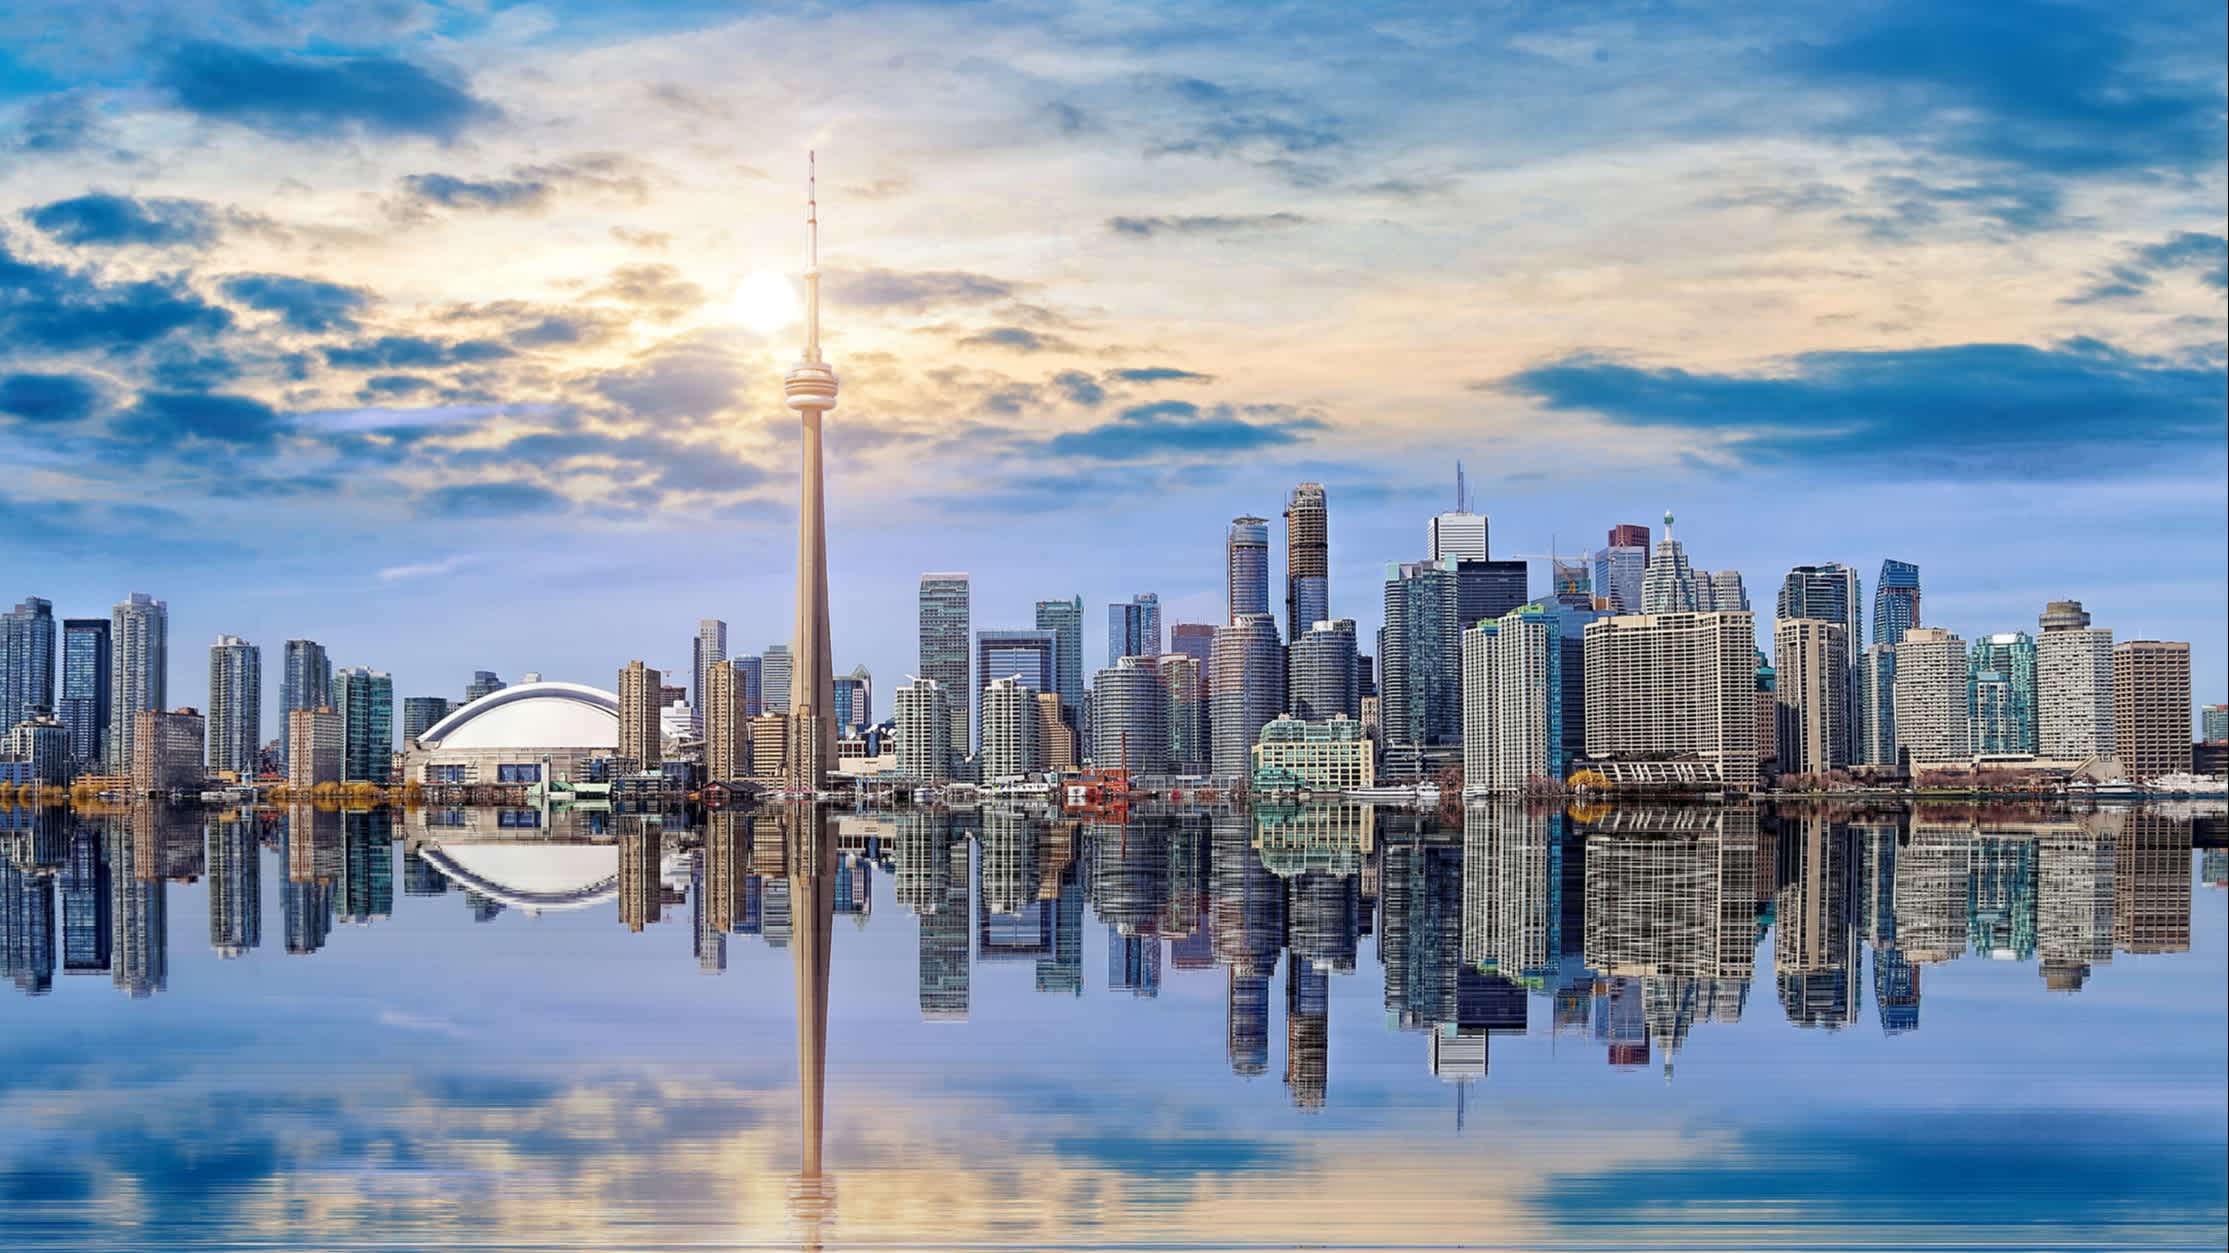 Panoramaaufnahme von Toronto Skyline, Ontario, Kanada.